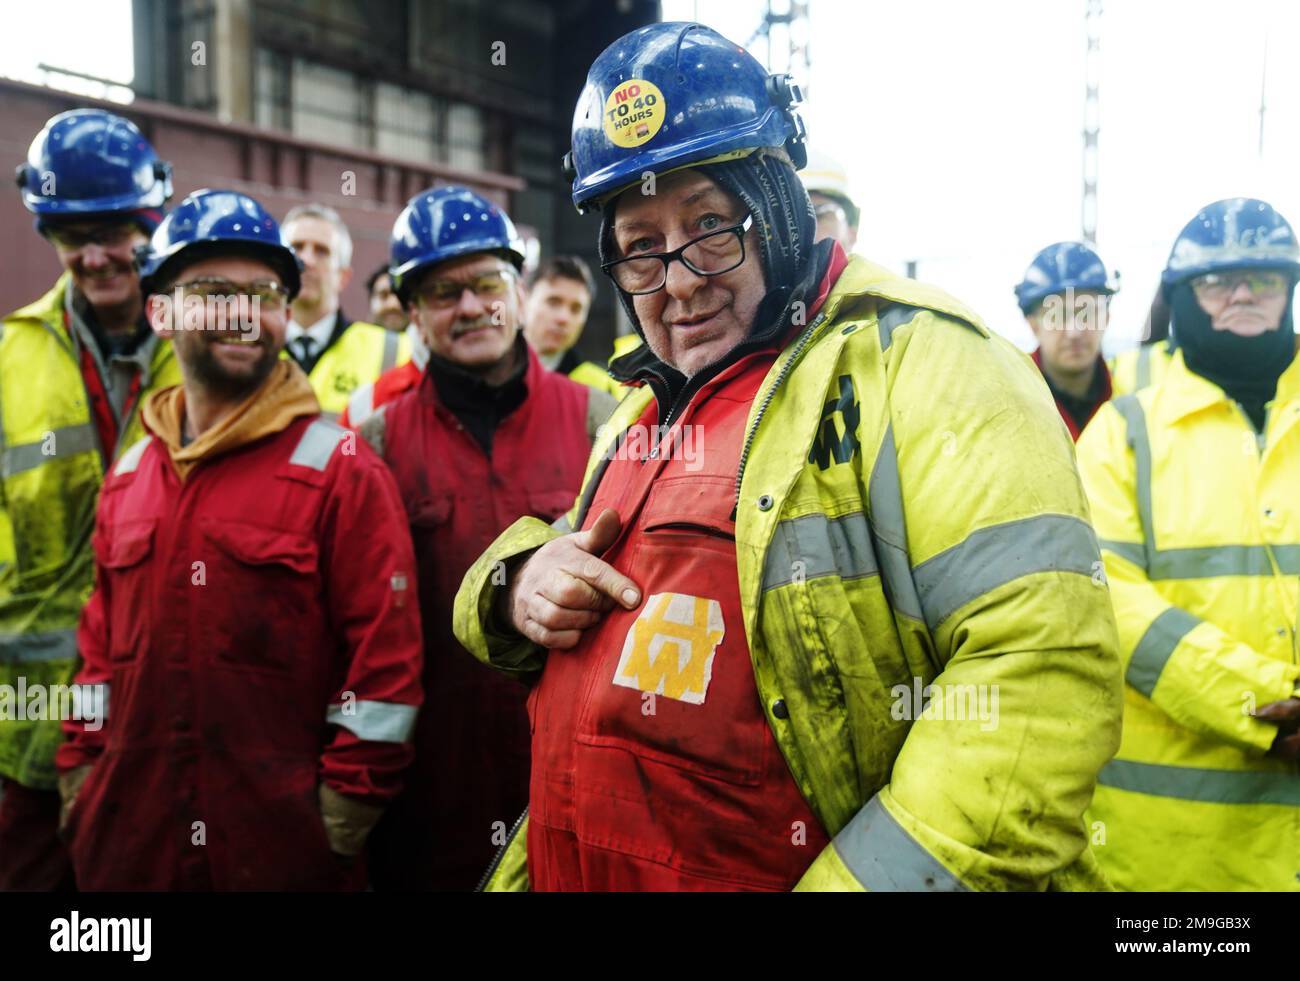 Lavoratori di Harland & Wolff presso la fabbrica navale di Belfast. Data immagine: Mercoledì 18 gennaio 2023. Foto Stock